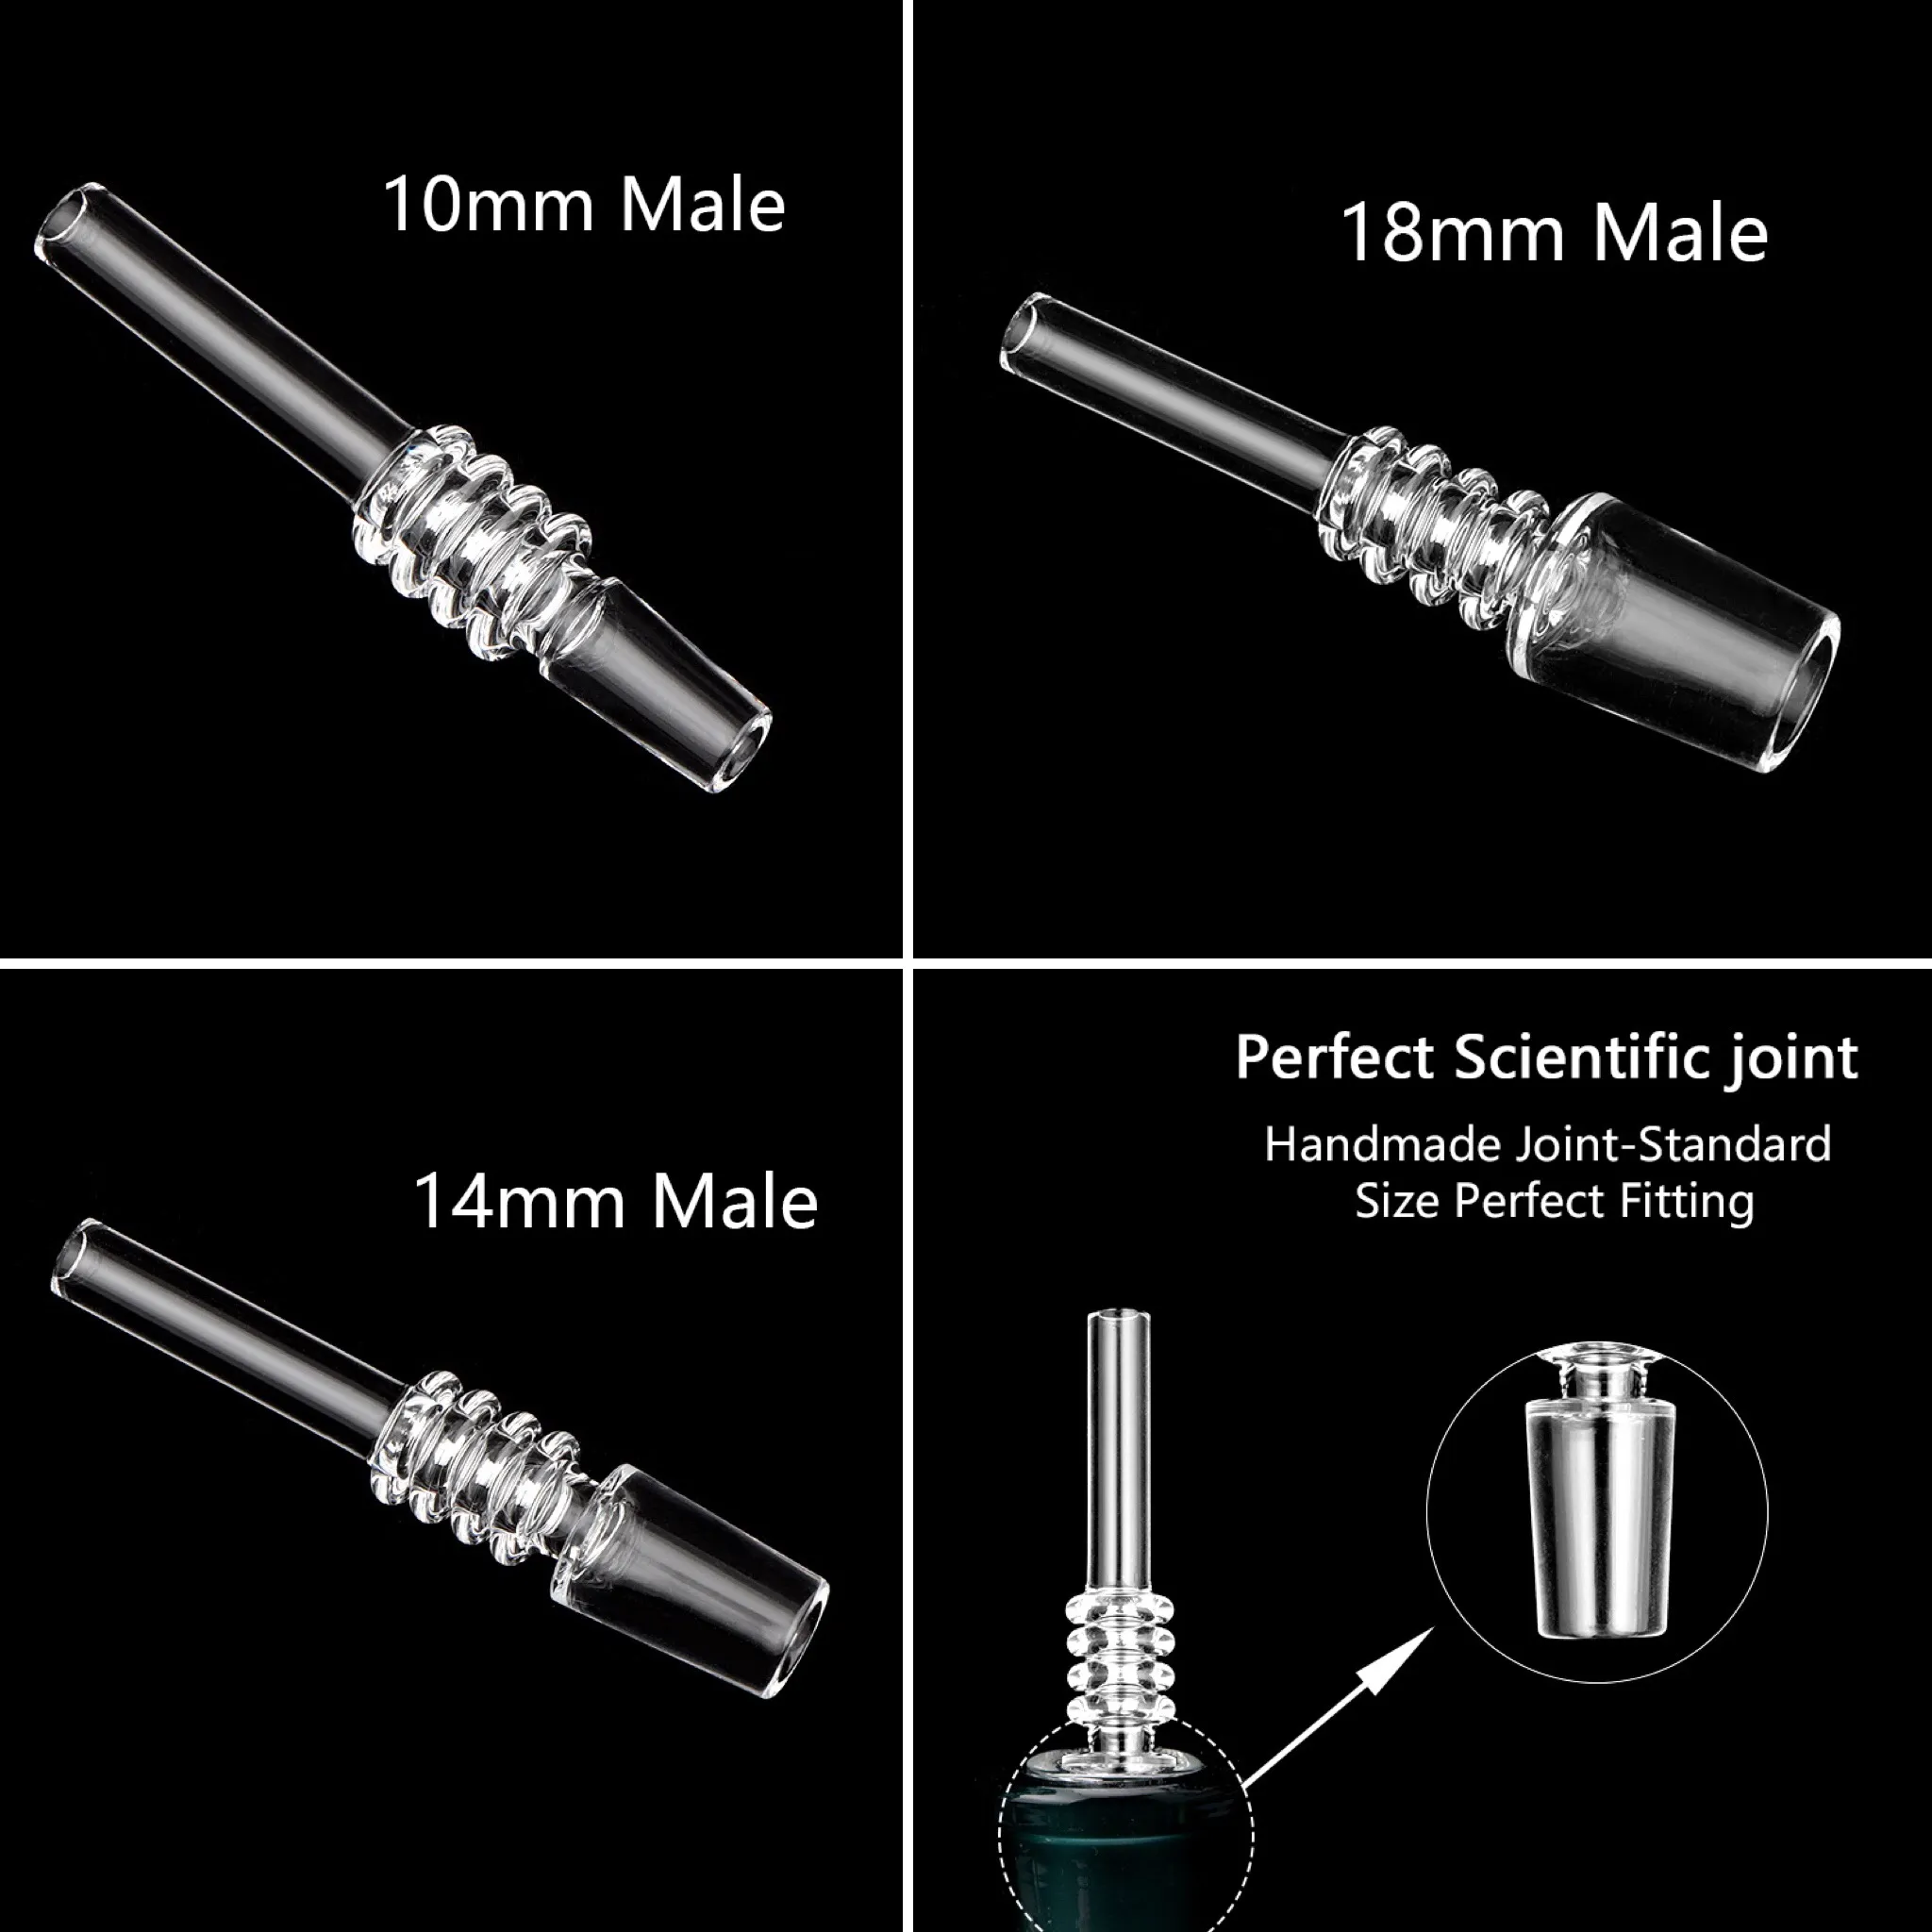 Quarzspitzen tupfen Stroh 10 mm, 14 mm, 18 mm Männliche Quarzspitzen mit Kunststoff-Keck-Clip-Quarzspitze für Mini-Bong-Nektar-Sammler-Kits zum Rauchen